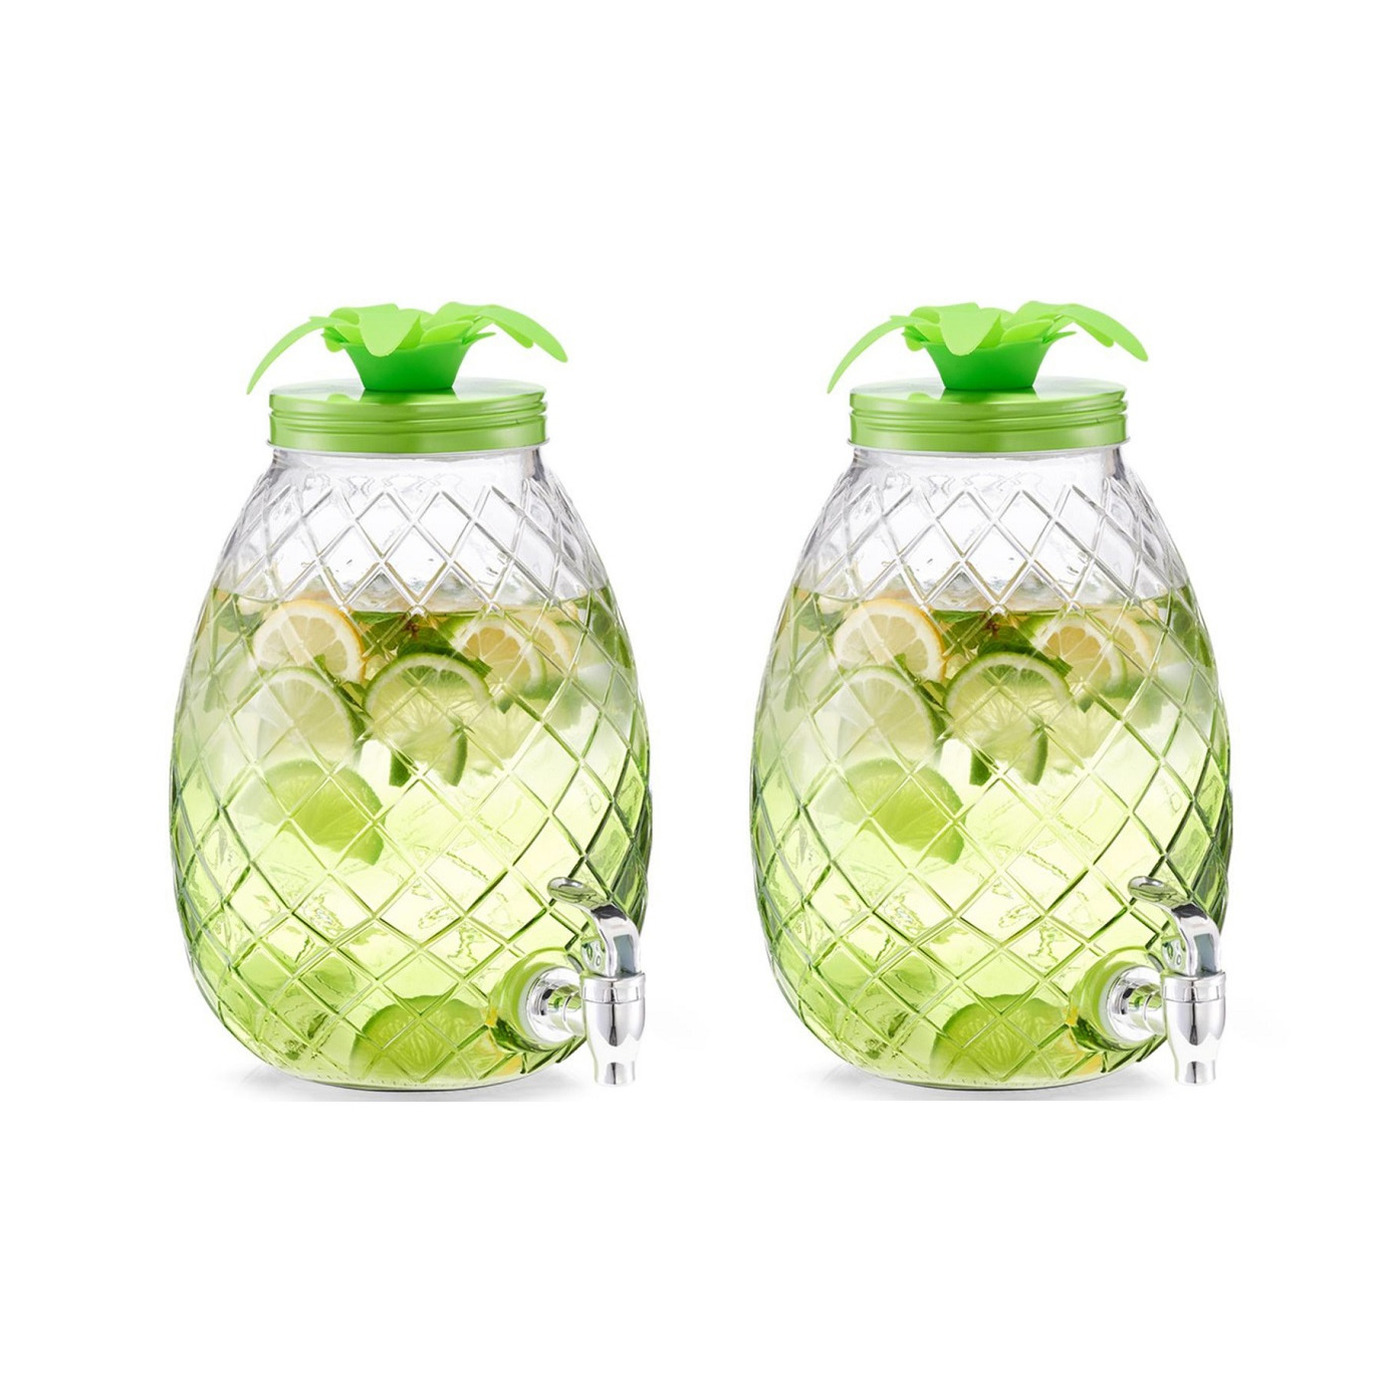 2x Groene glazen drank dispensers ananas 4,5 liter - Zeller - Keukenbenodigdheden - Zomers/tropisch tuinfeest decoratie - Dranken serveren - Drankdispensers - Dispensers voor o.a.